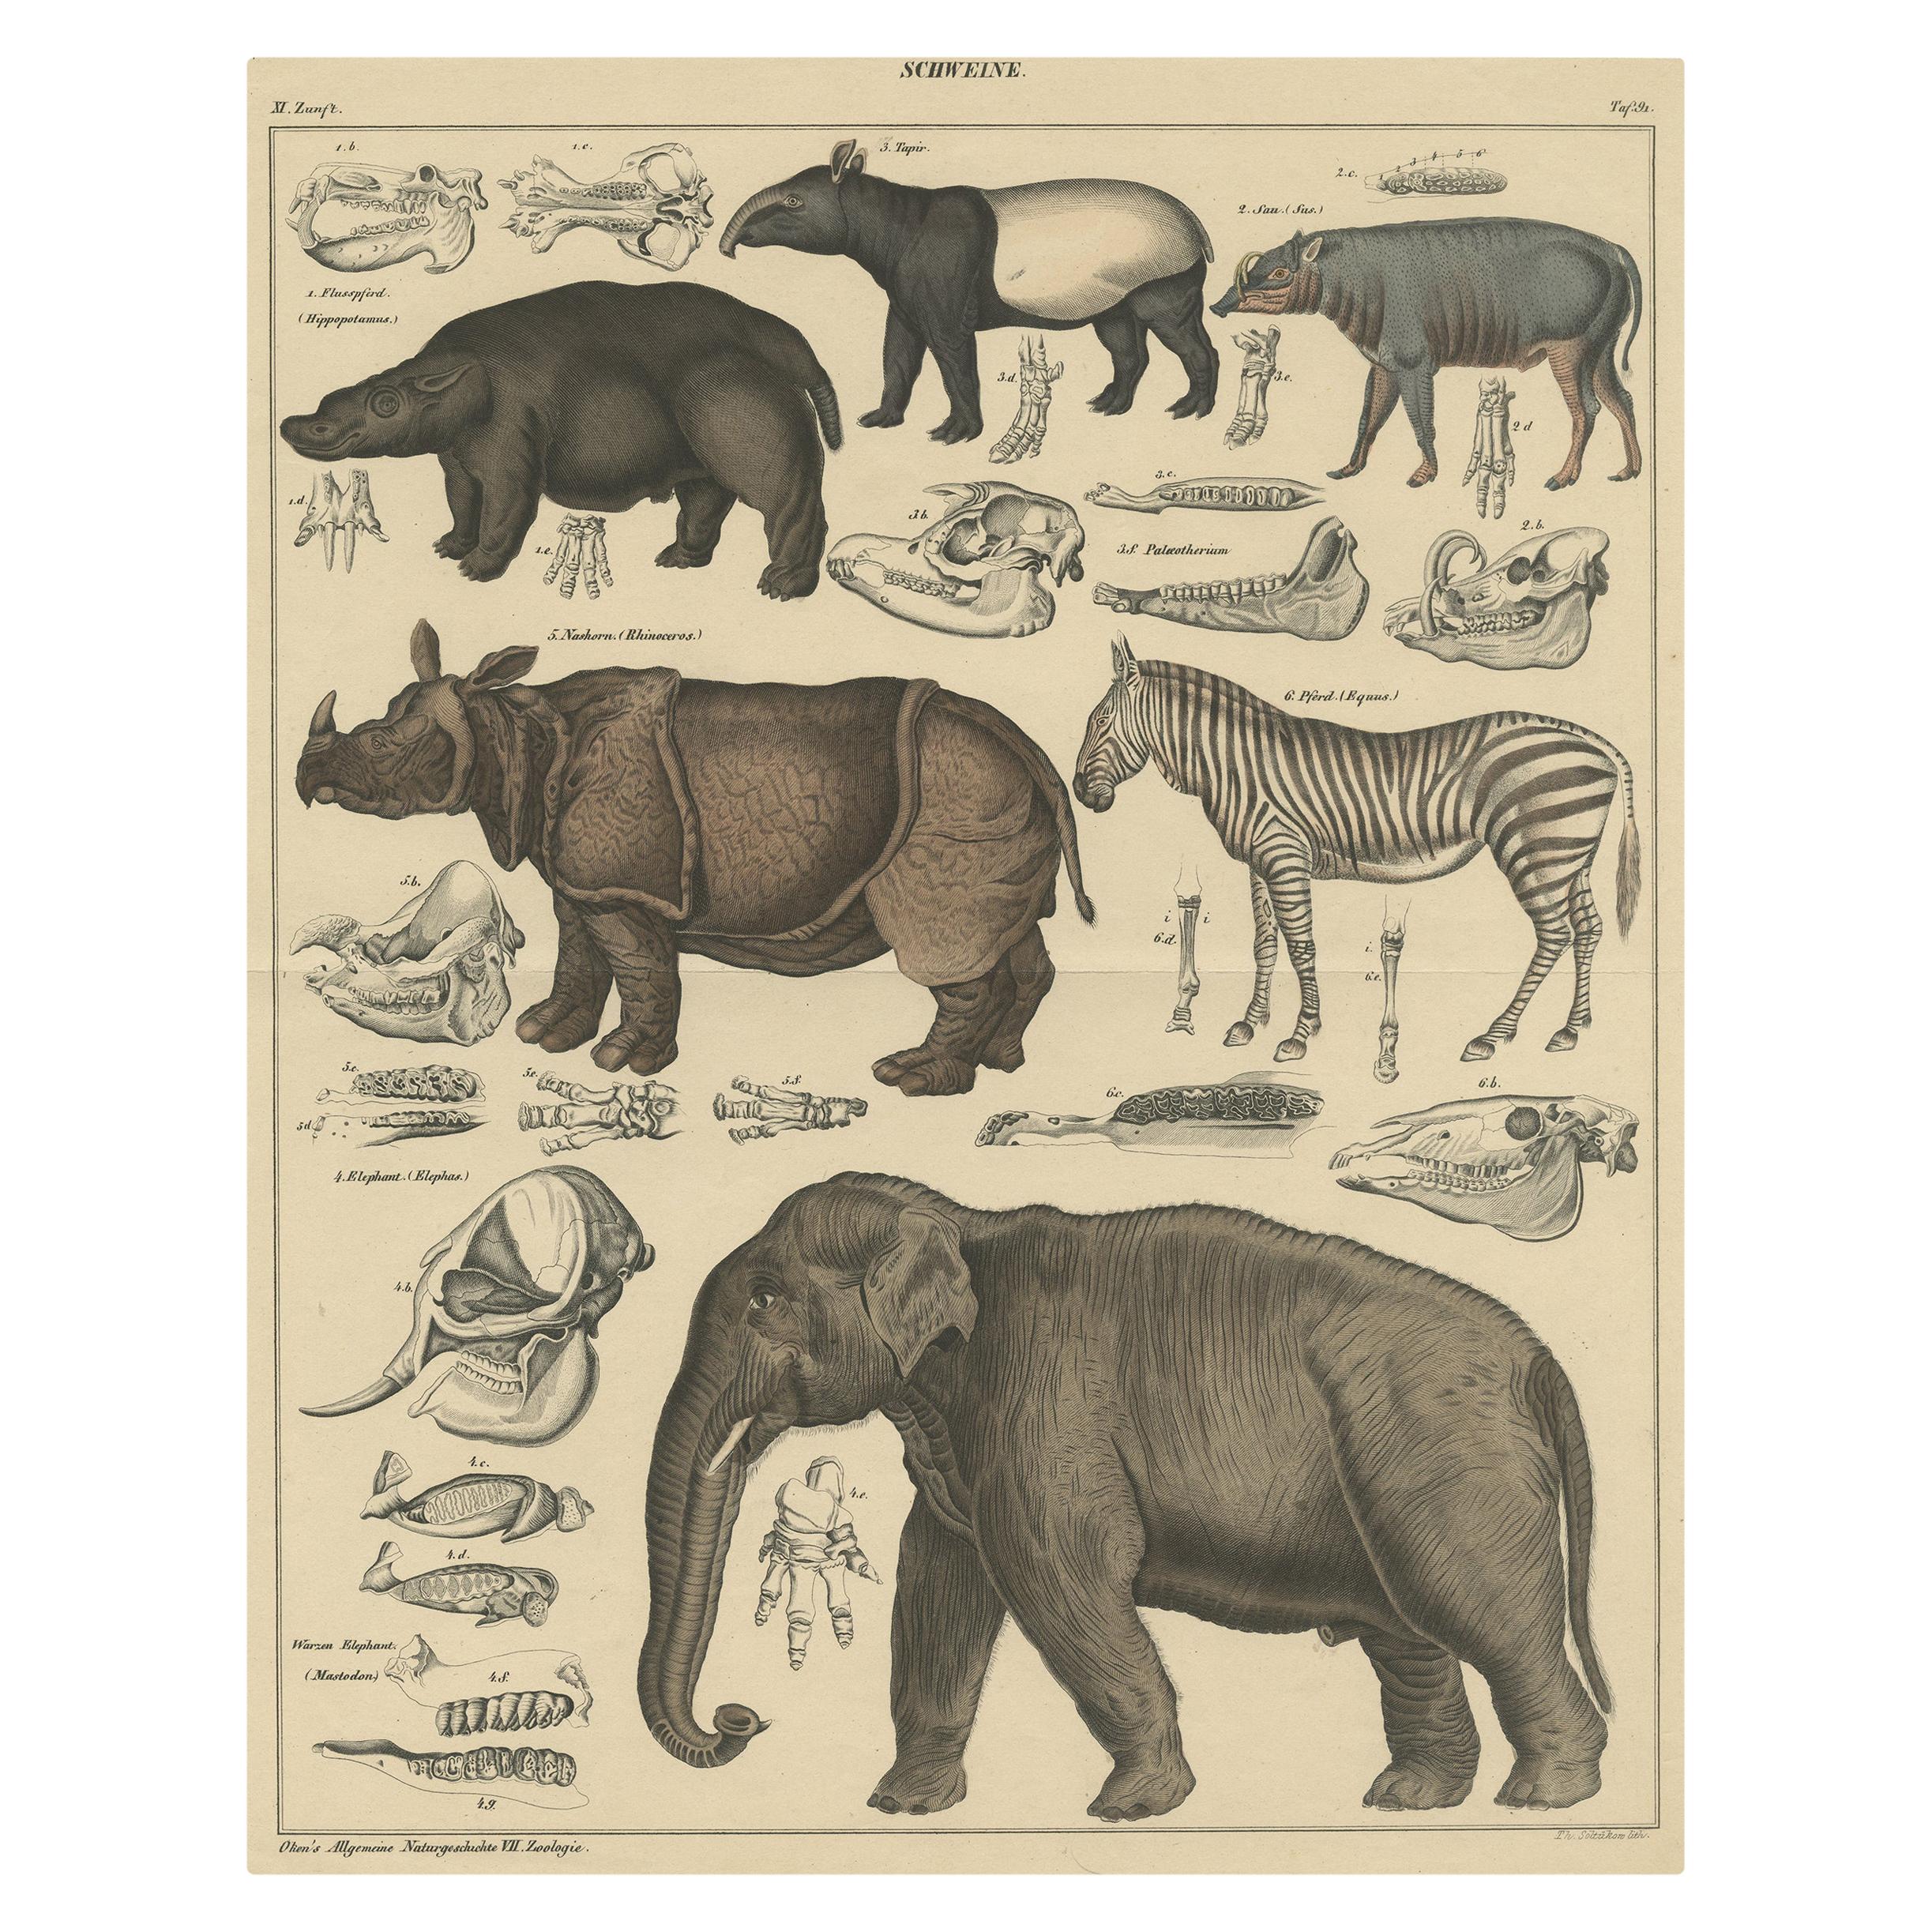 Impression ancienne d'un tapis, d'un Hippo, d'un zèbre, d'un éléphant et d'autres animaux par Oken, 1840